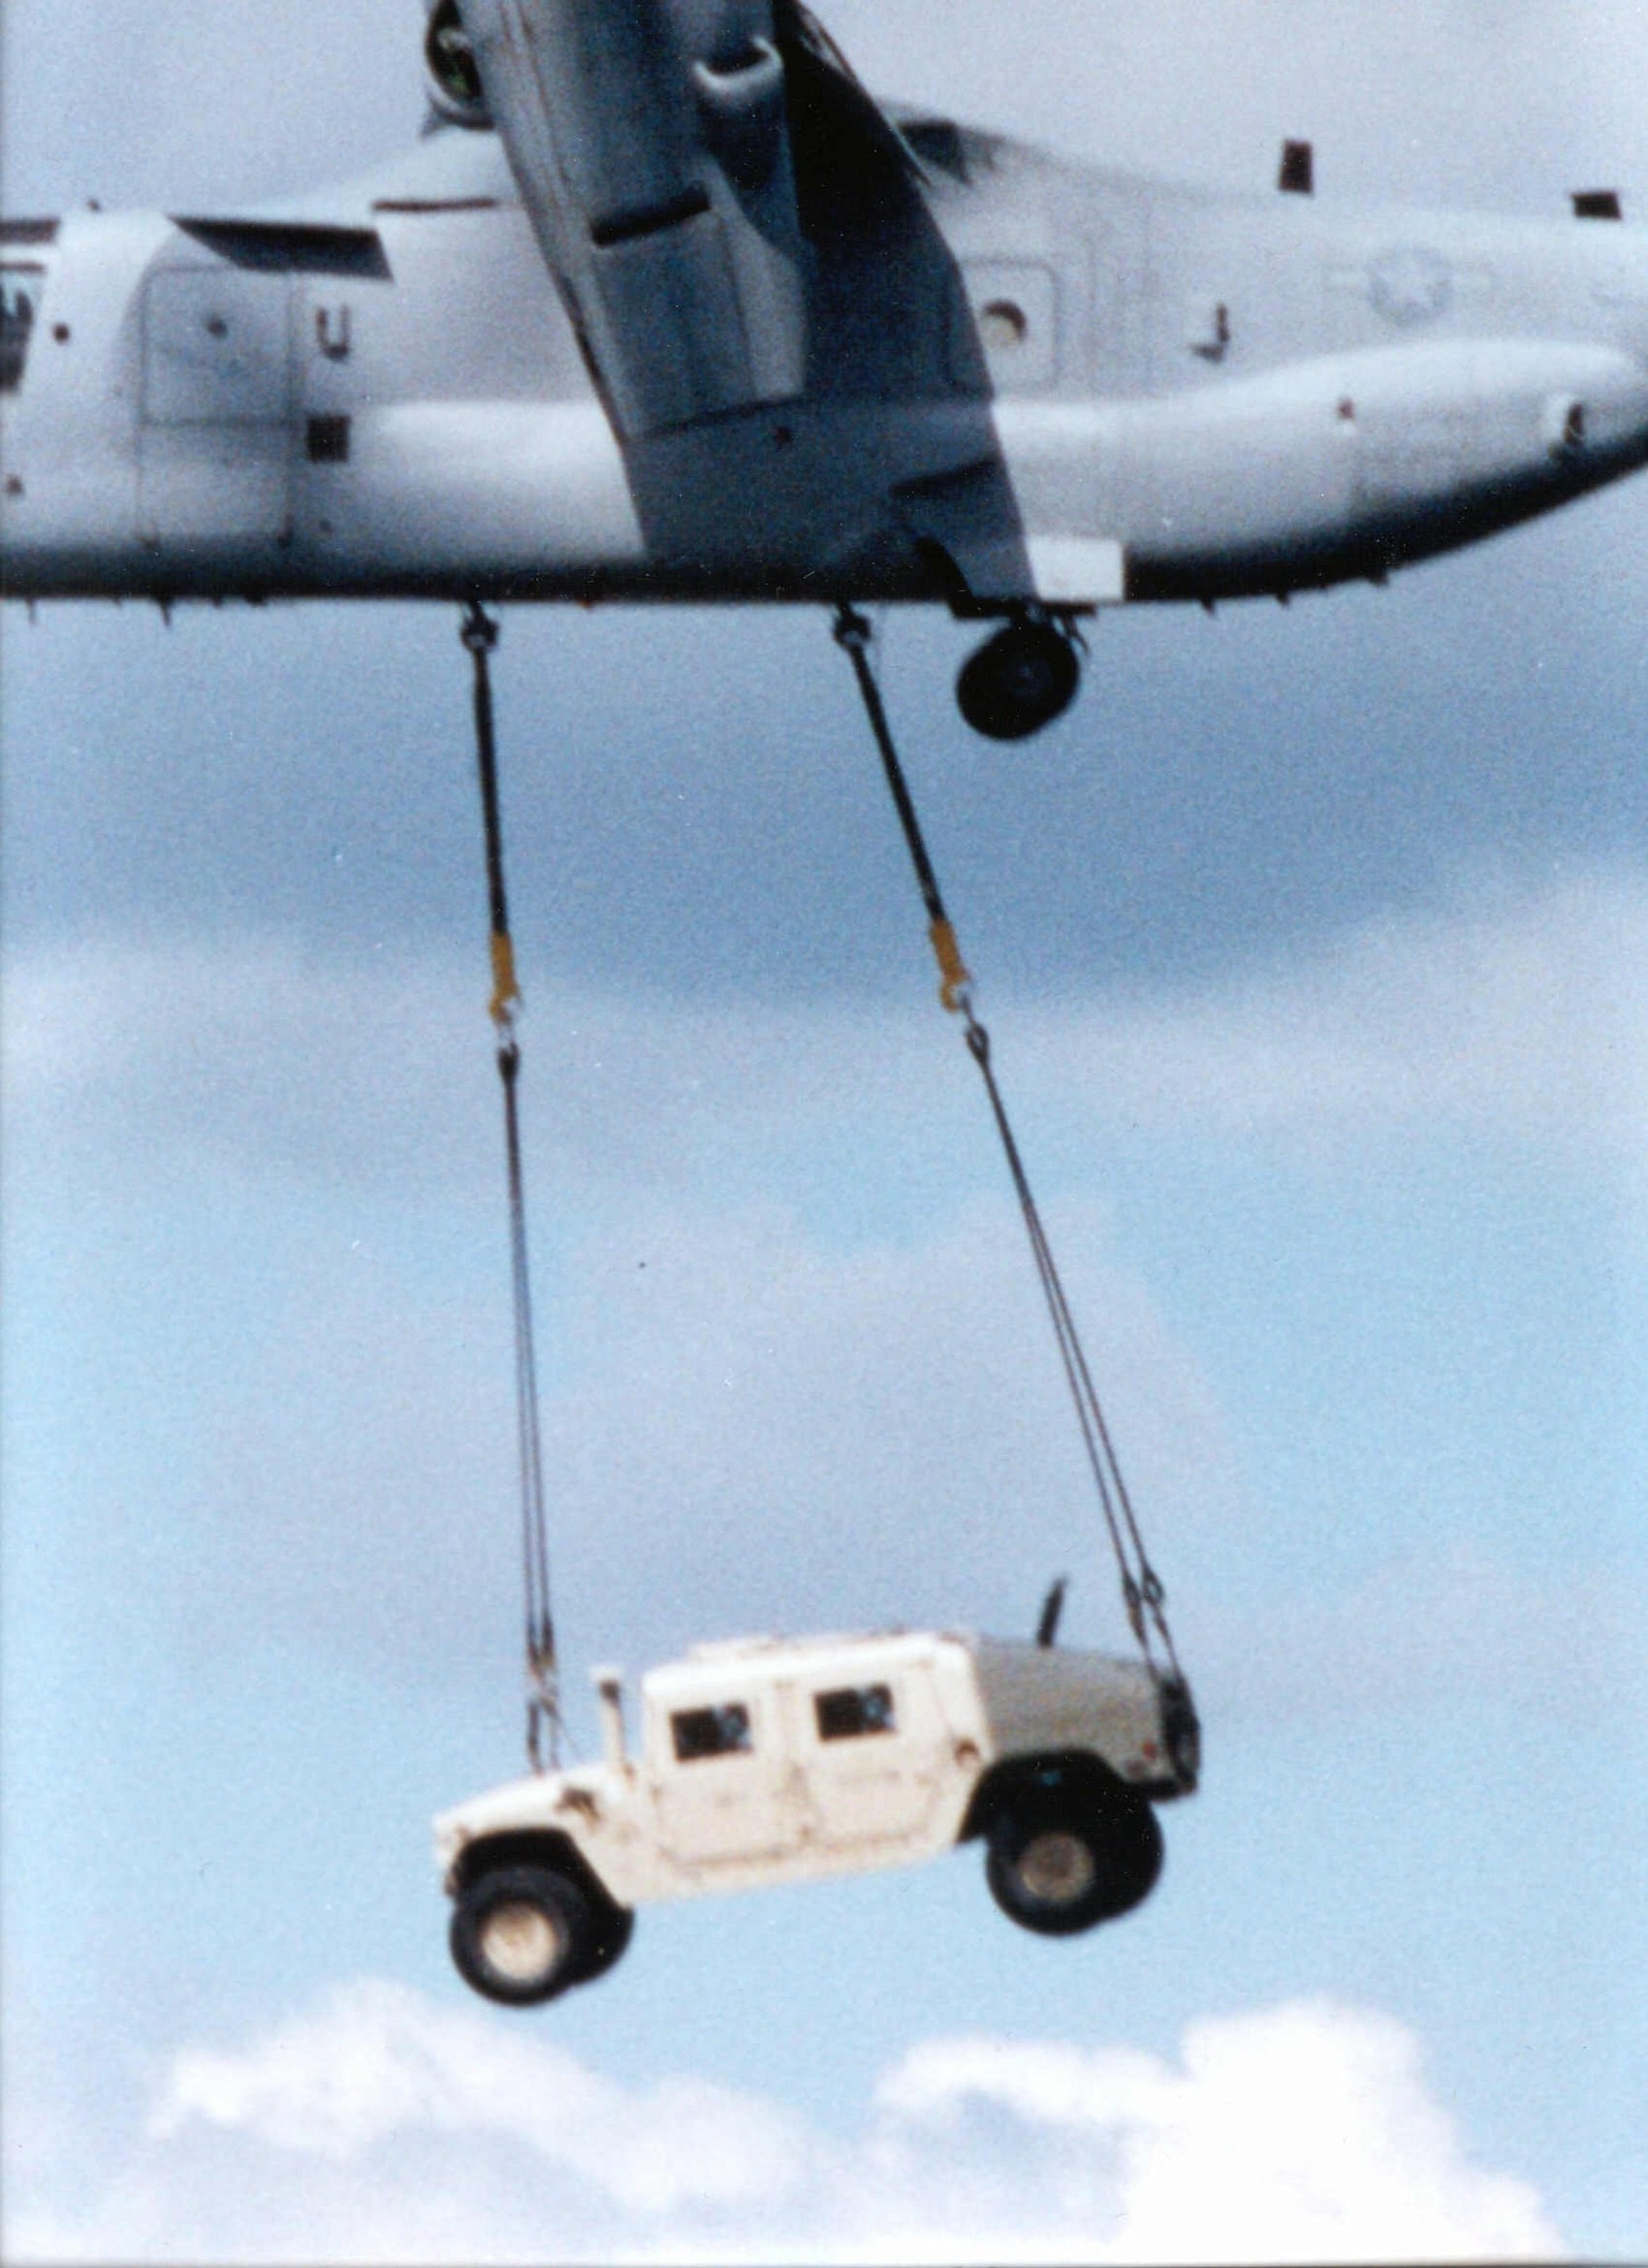 V22 flying with HMMWV